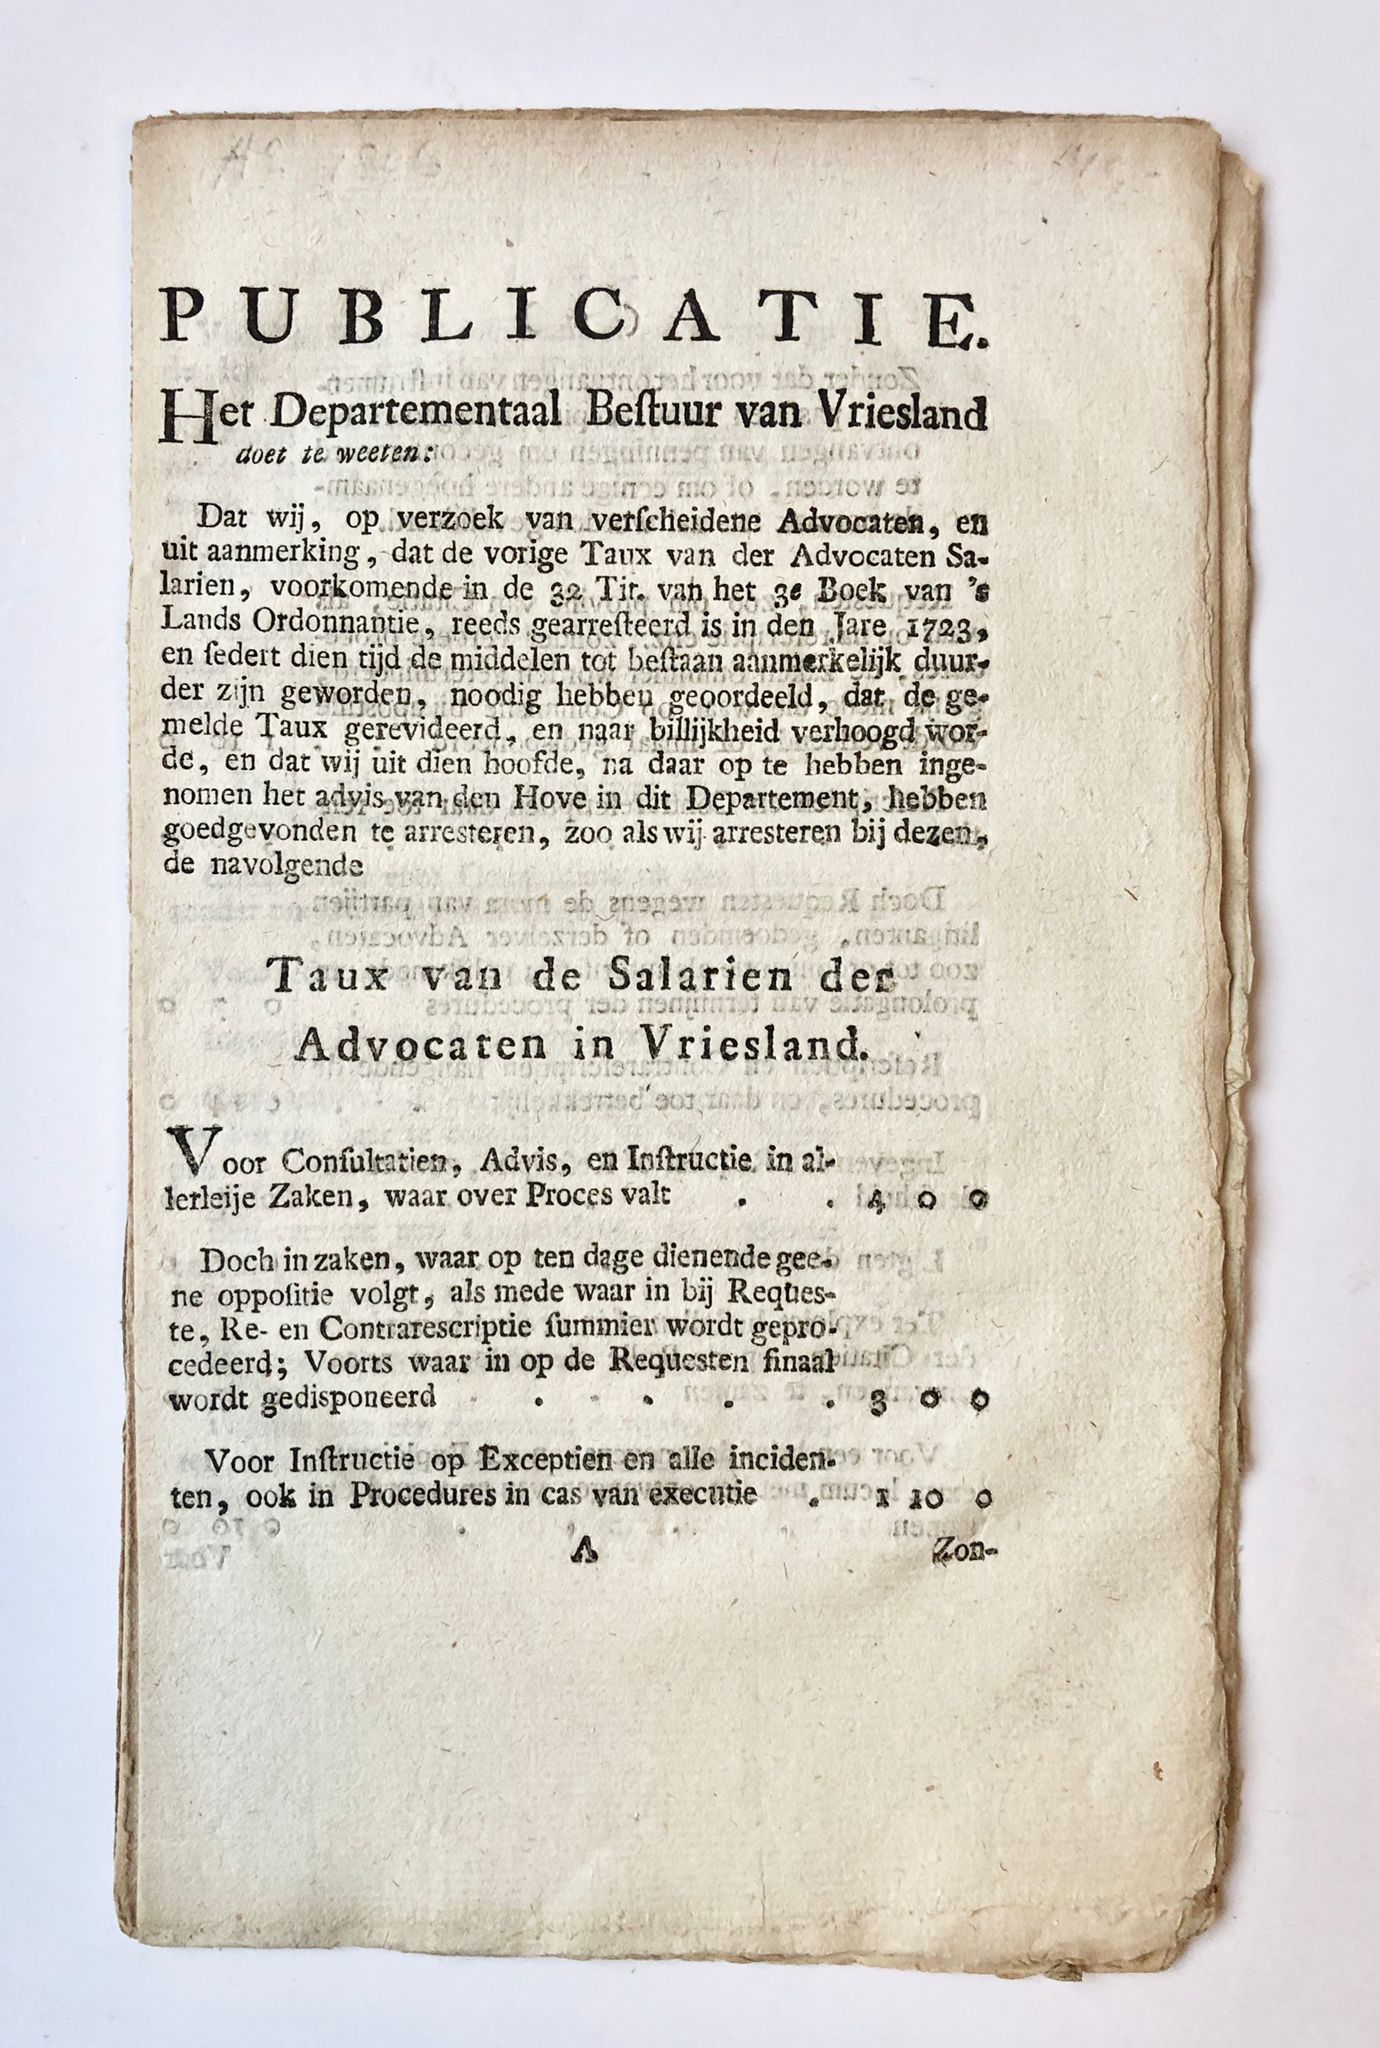 [Friesland 1806, Fee lawyers, tarieven advocaten] Publicatie. Het Departementaal bestuur van Vriesland doet te weten: (...) [betreffende] Taux van de Salarien der advocaten in Vriesland, Leeuwarden [s.n.][1806], 13 pp. 13 pp.